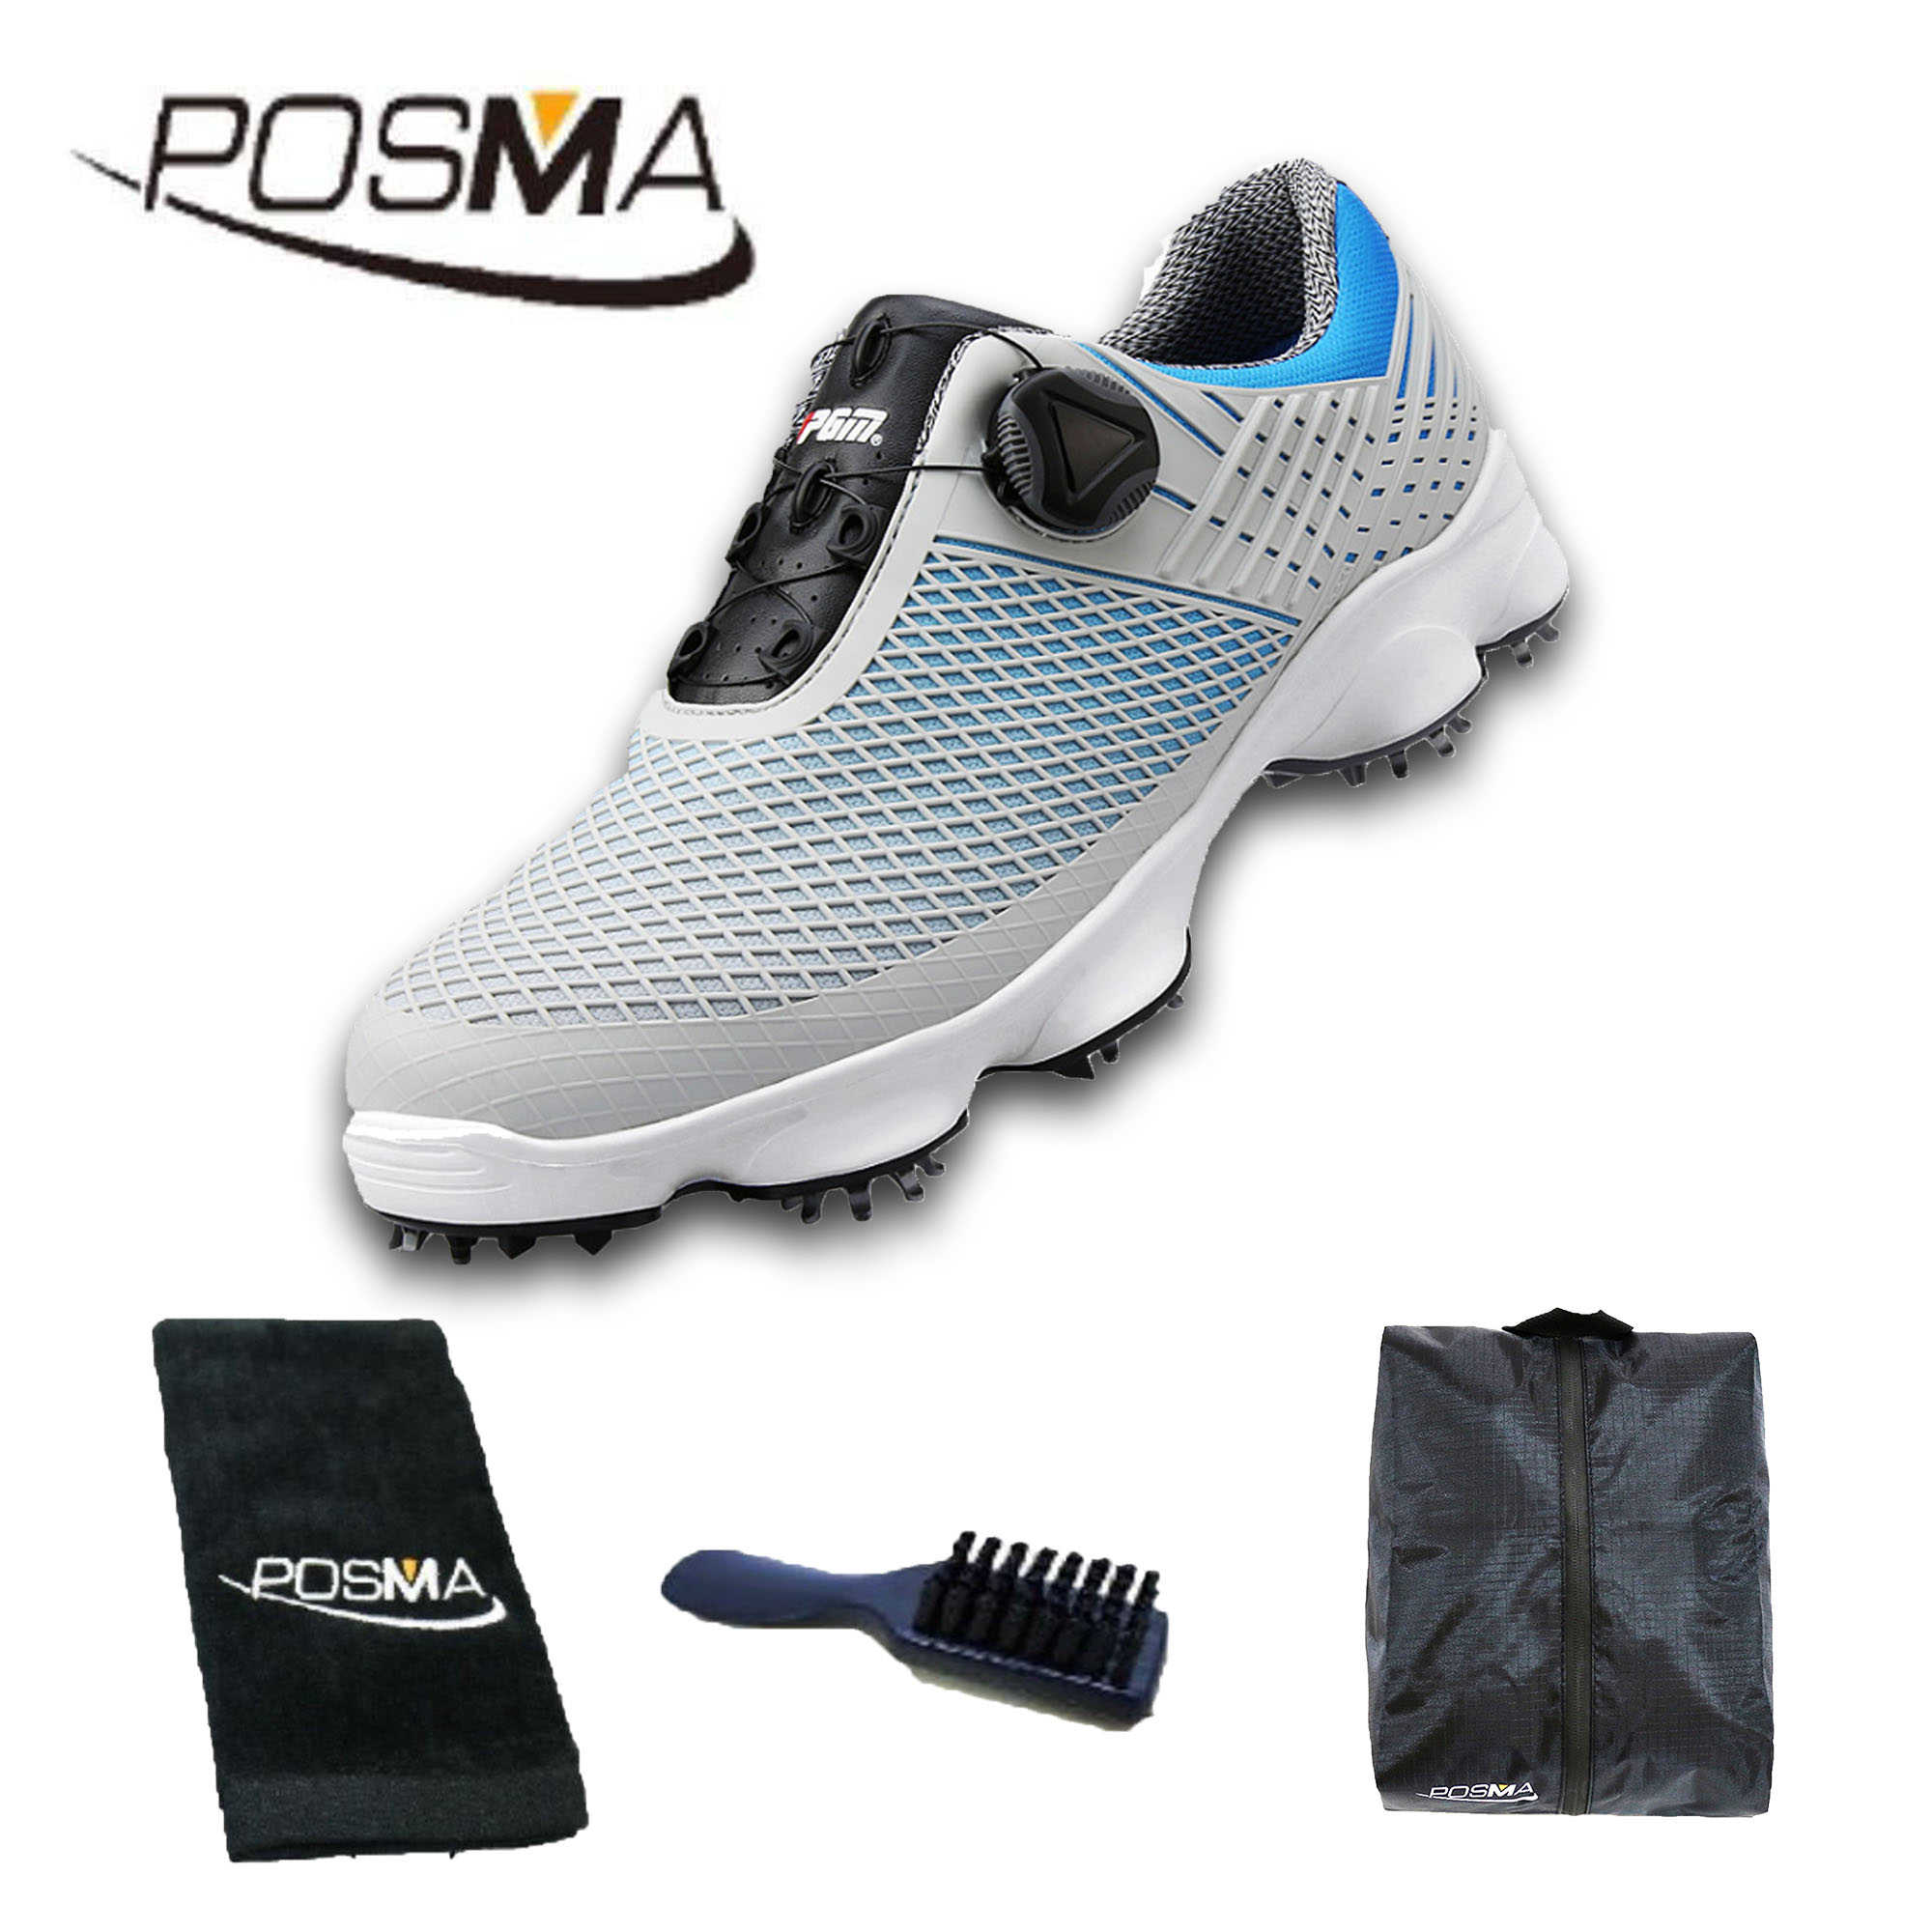 高爾夫球鞋 男士防水運動鞋 寬版鞋底 旋轉鞋帶鞋  GSH106 灰 藍  配POSMA鞋包 2合1清潔刷 高爾夫球毛巾